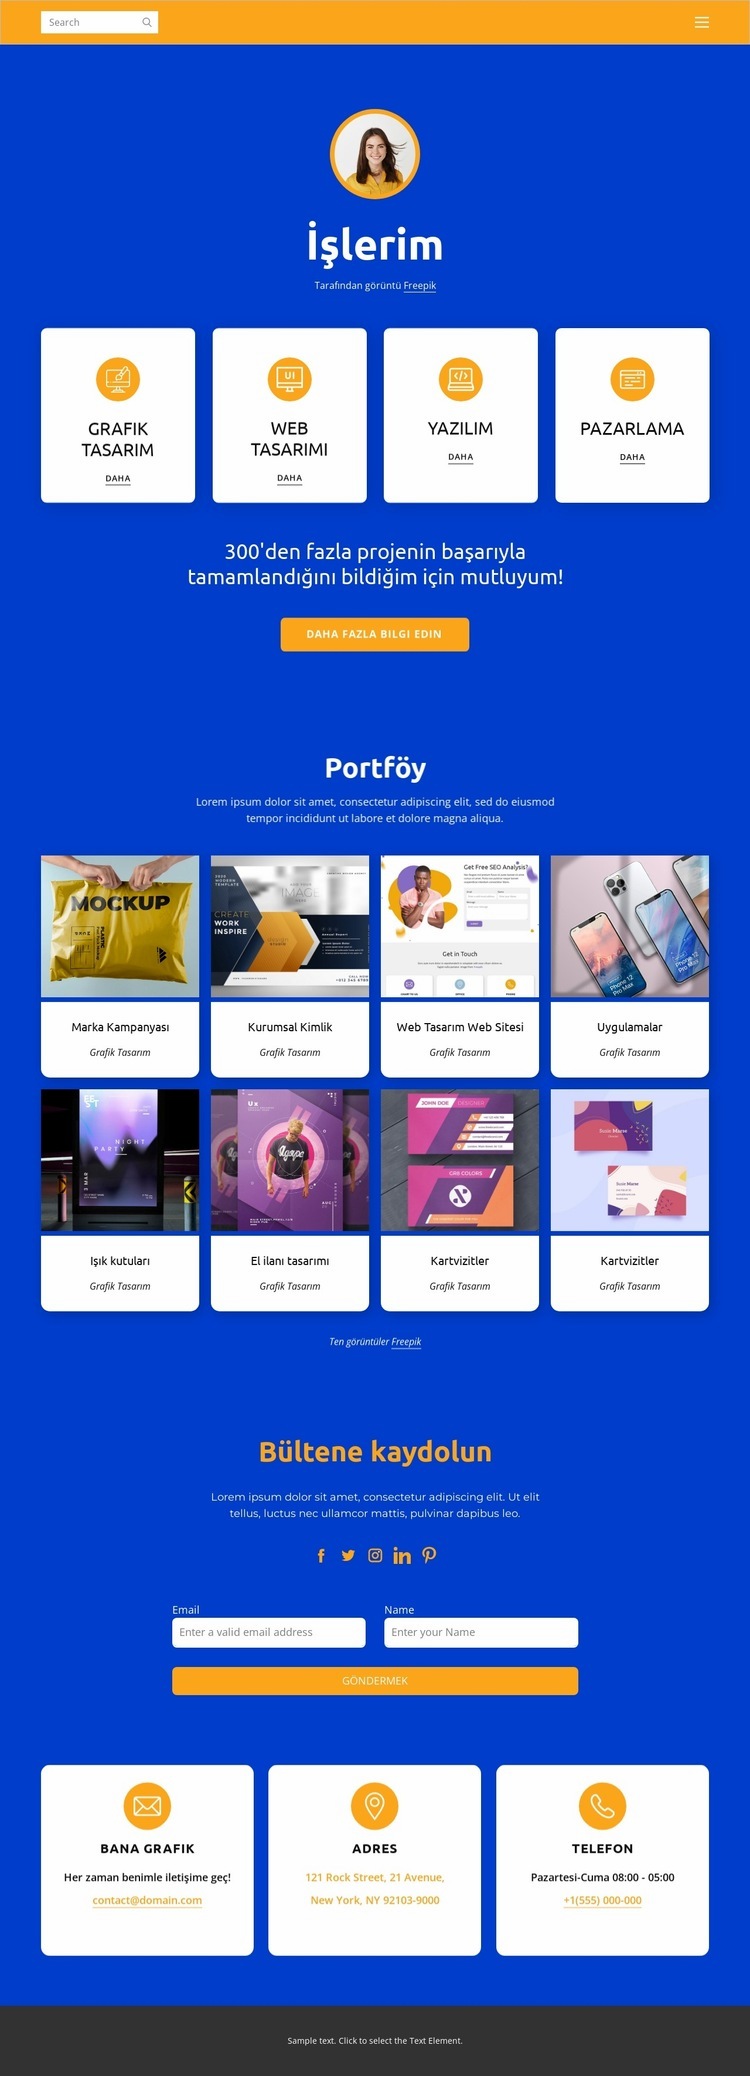 Web tasarımı ve grafik tasarım Açılış sayfası